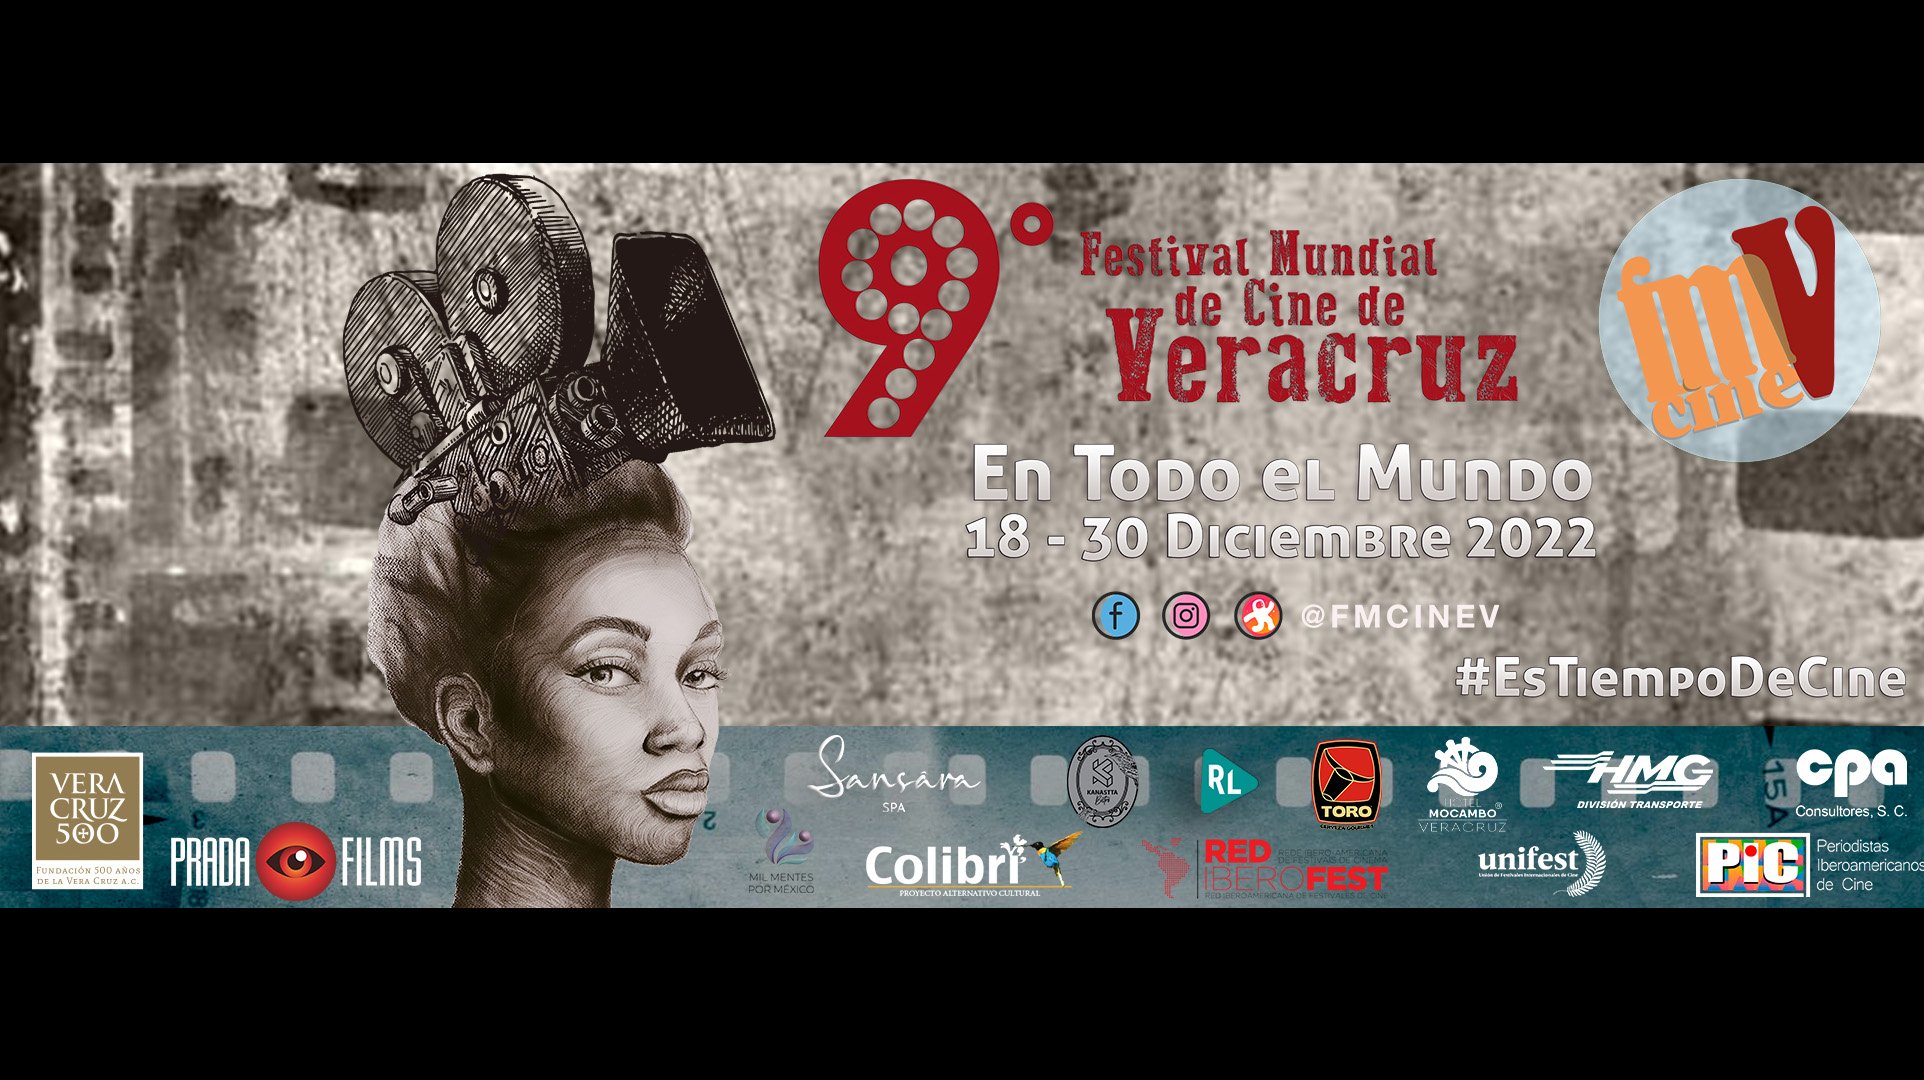 Festival Mundial de Veracruz cuenta con el tercer Premio PIC de este año